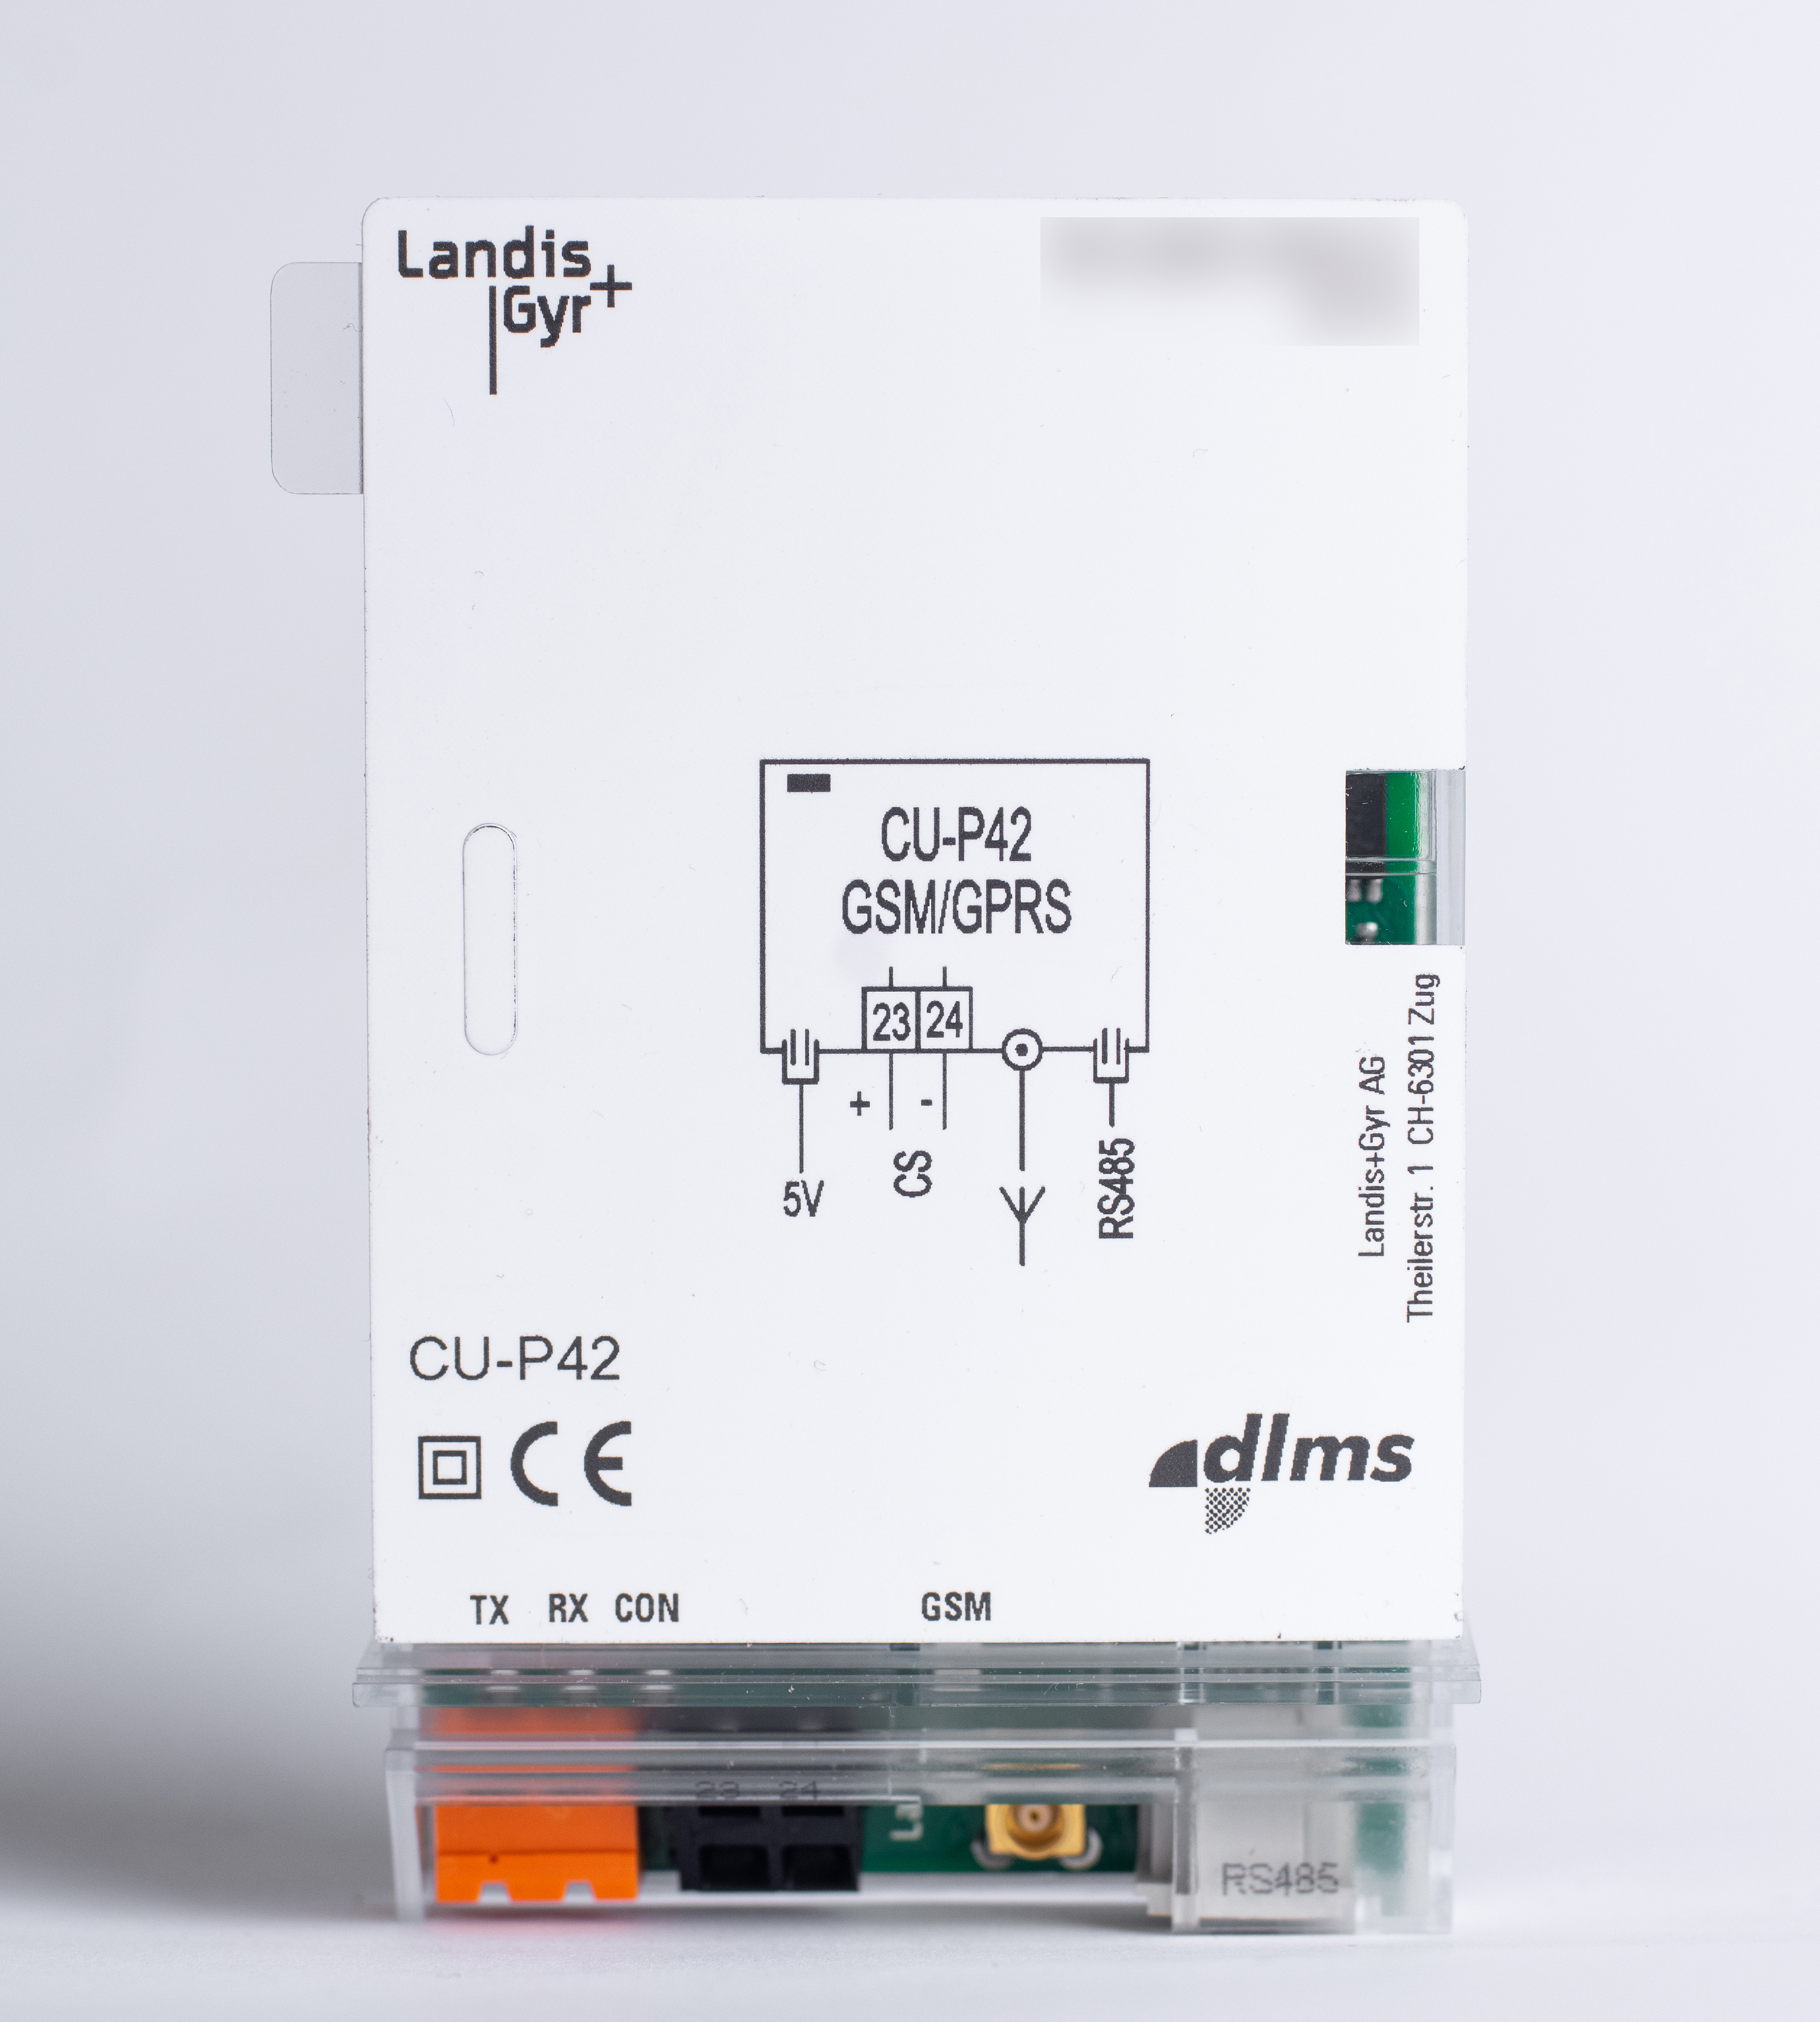 CU-P42 (GSM/GPRS, RS485/CS+) komunikační jednotka Landis+Gyr